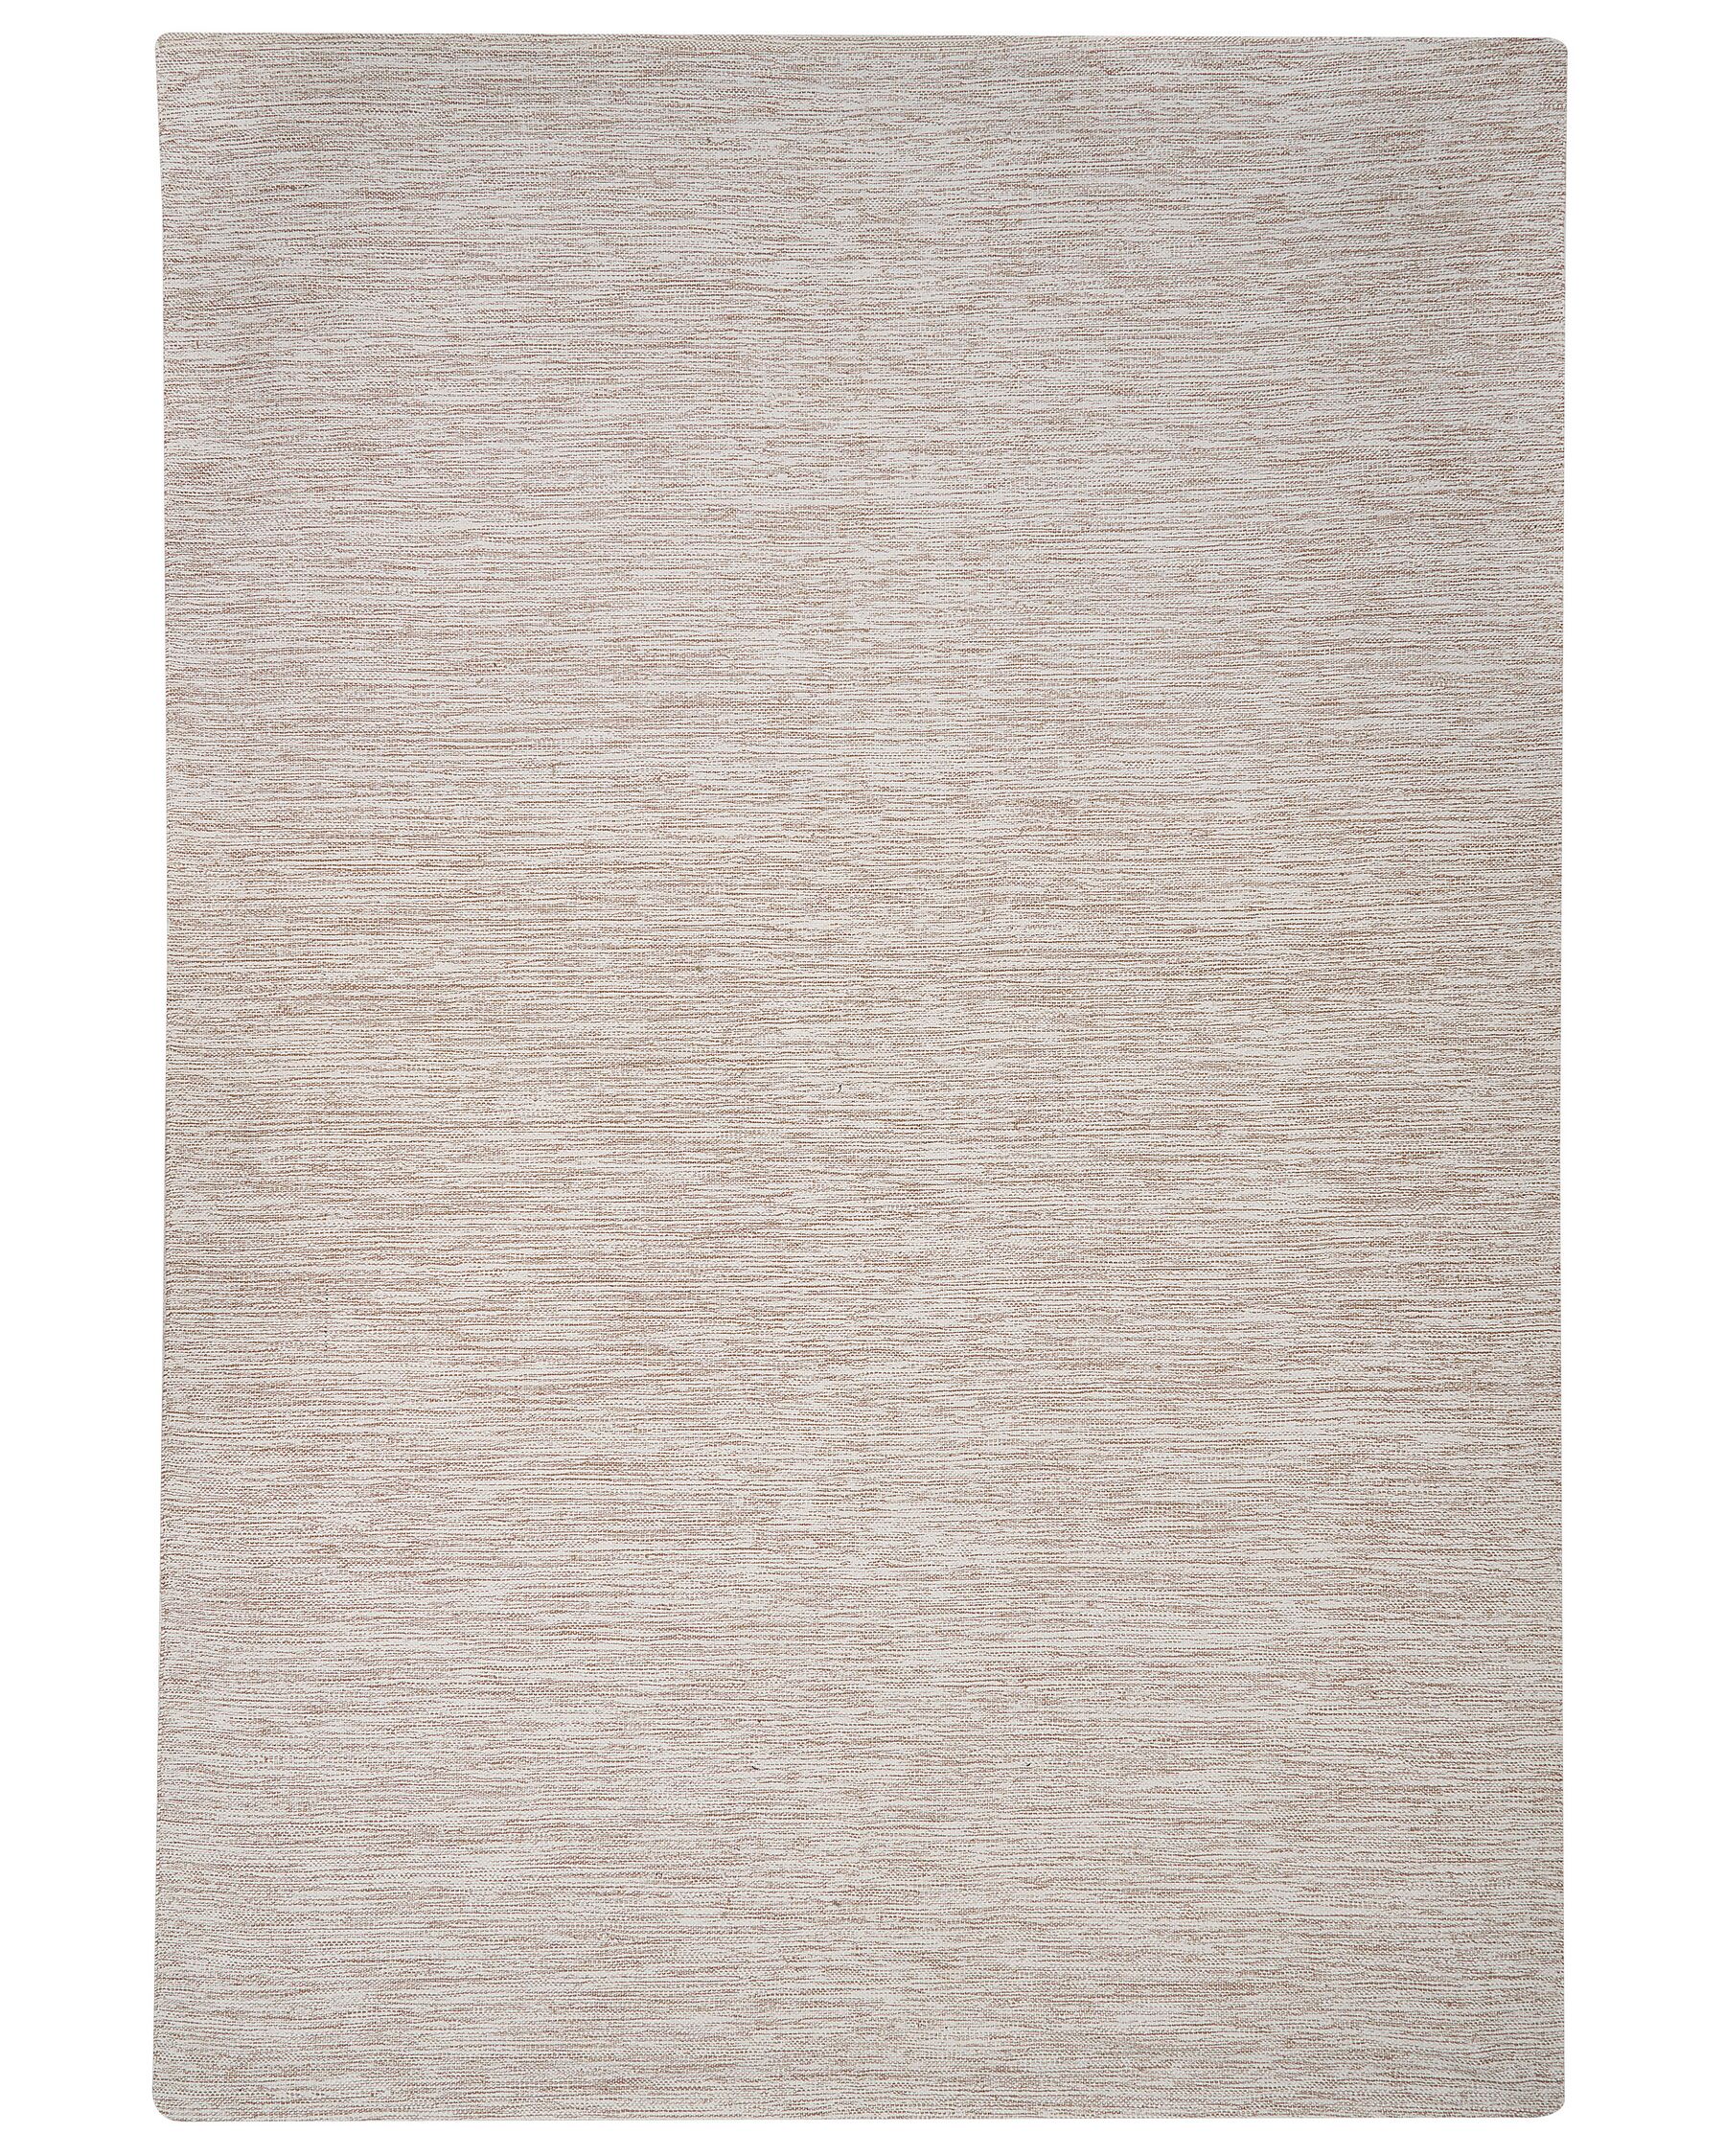 Tappeto cotone beige 200 x 300 cm DERNICE_903438